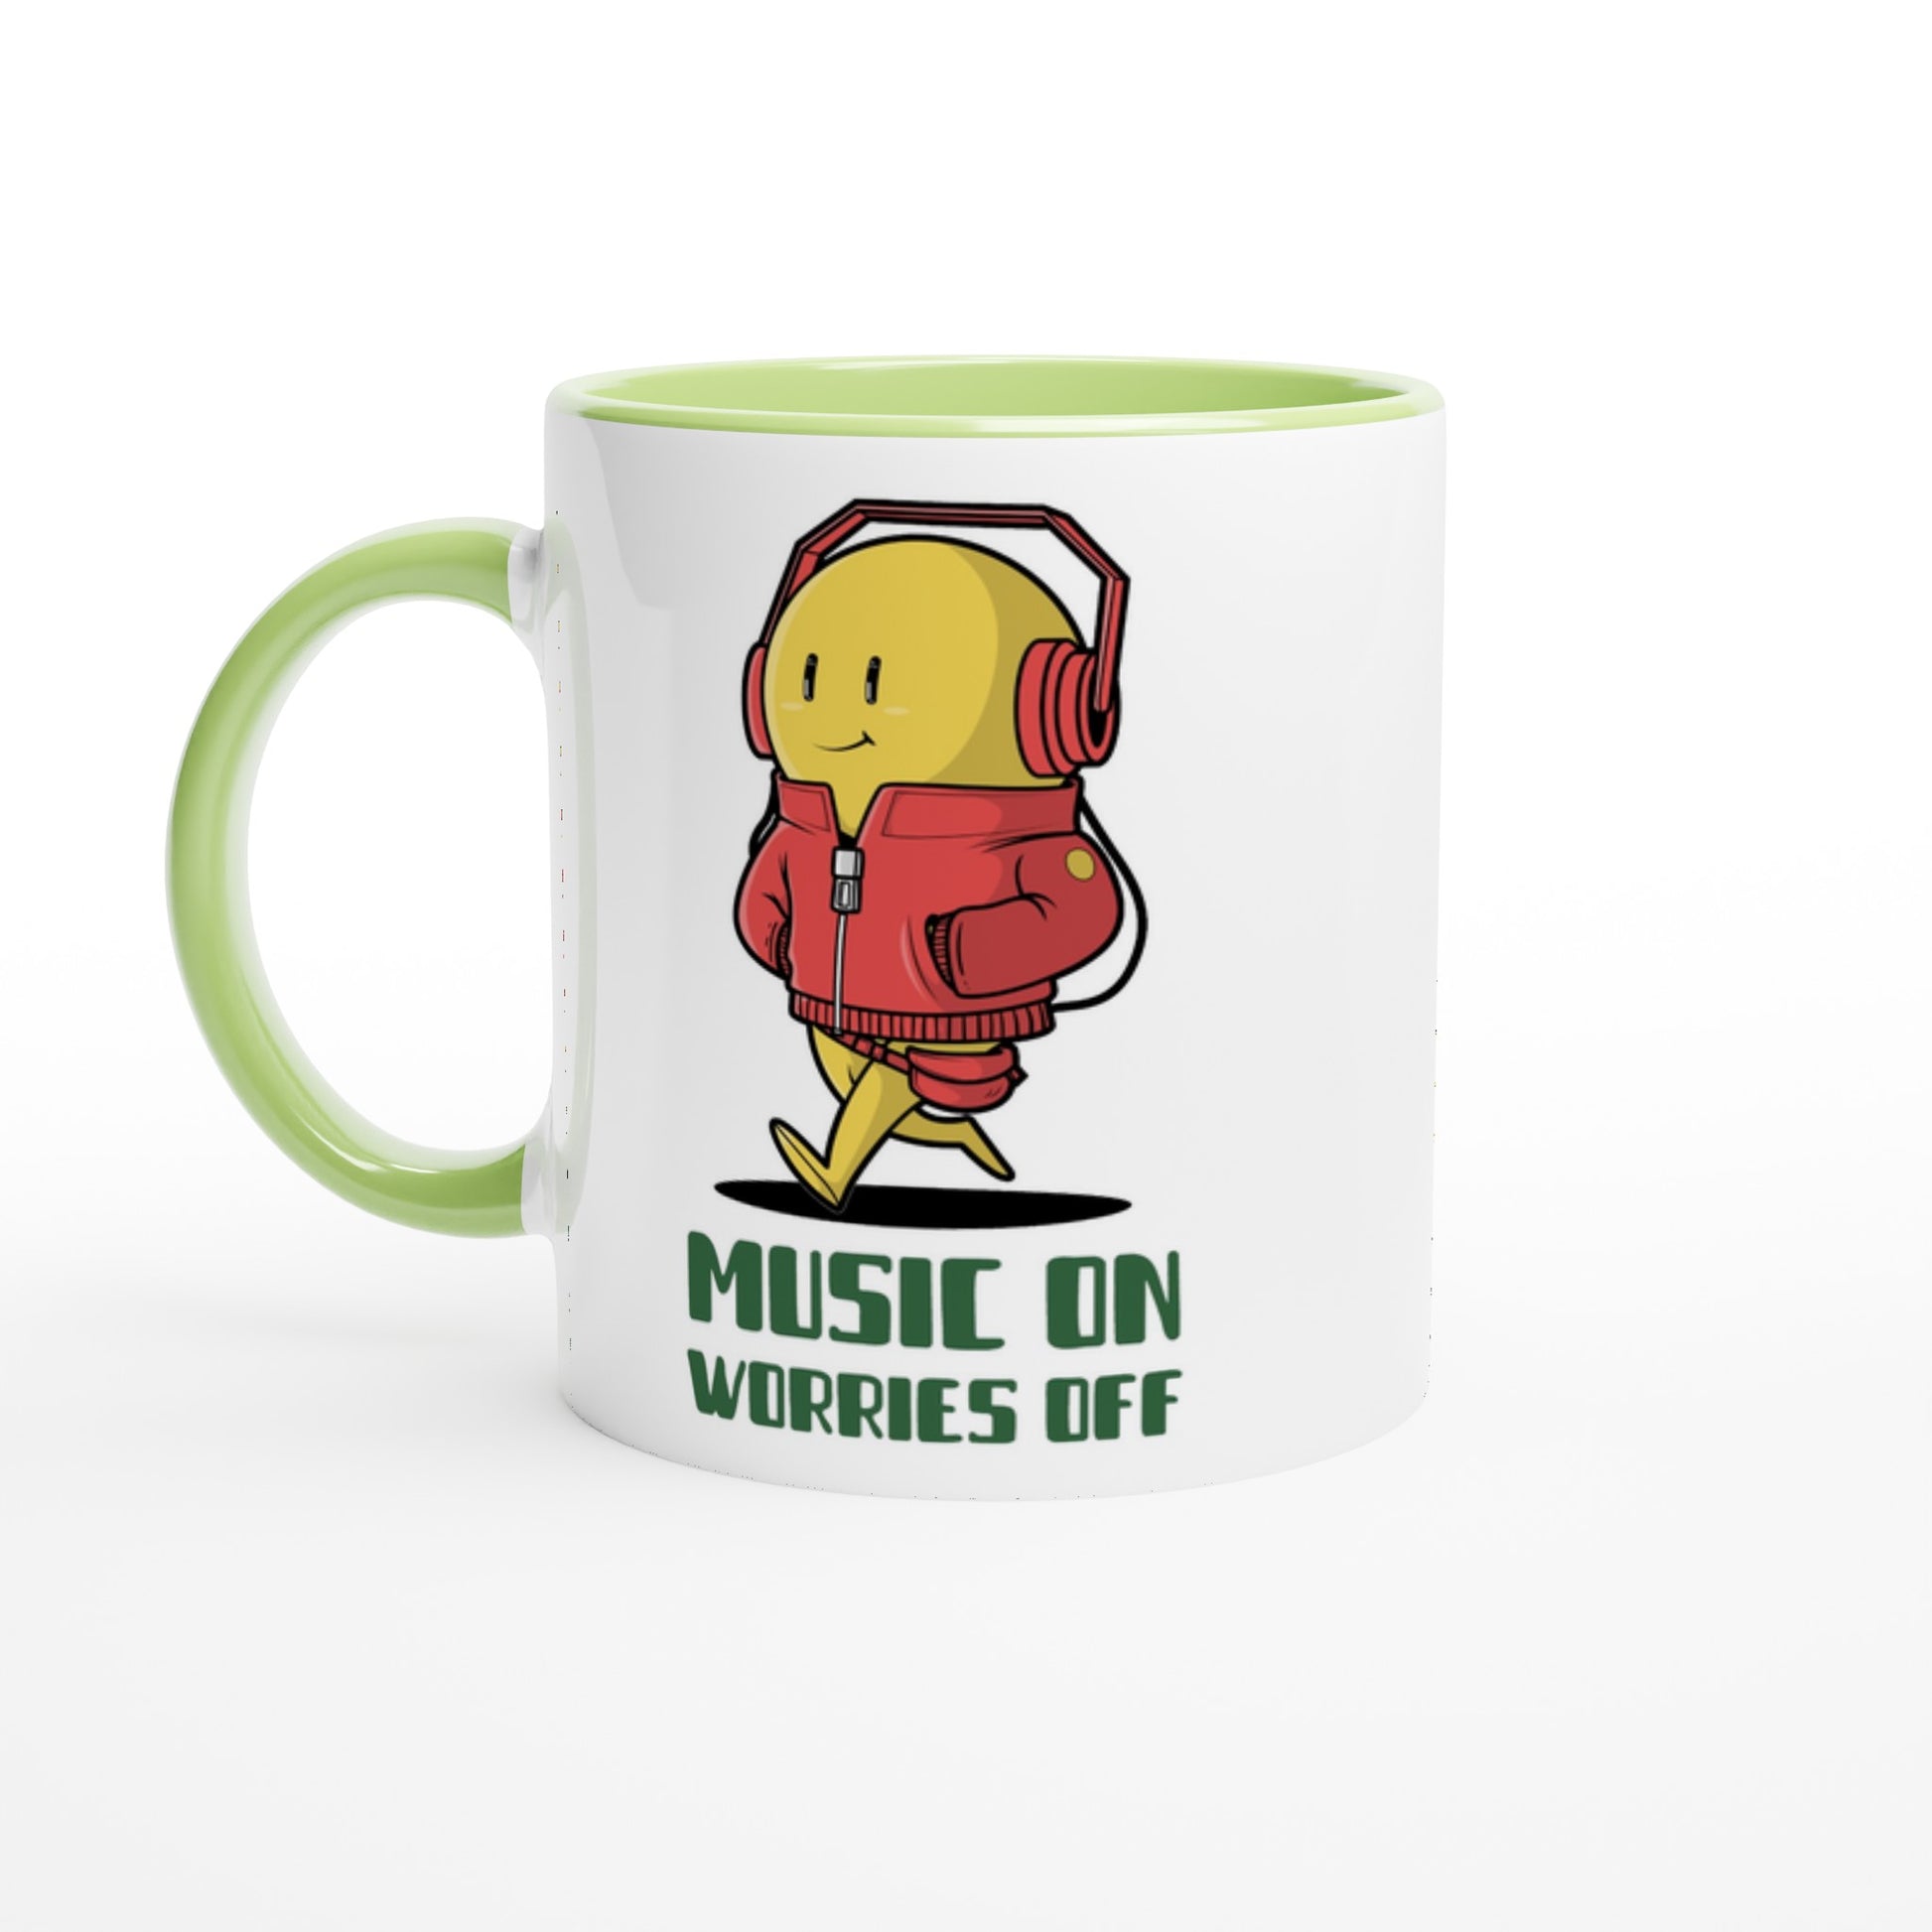 Music On, Worries Off - White 11oz Ceramic Mug with Colour Inside Ceramic Green Colour 11oz Mug Music